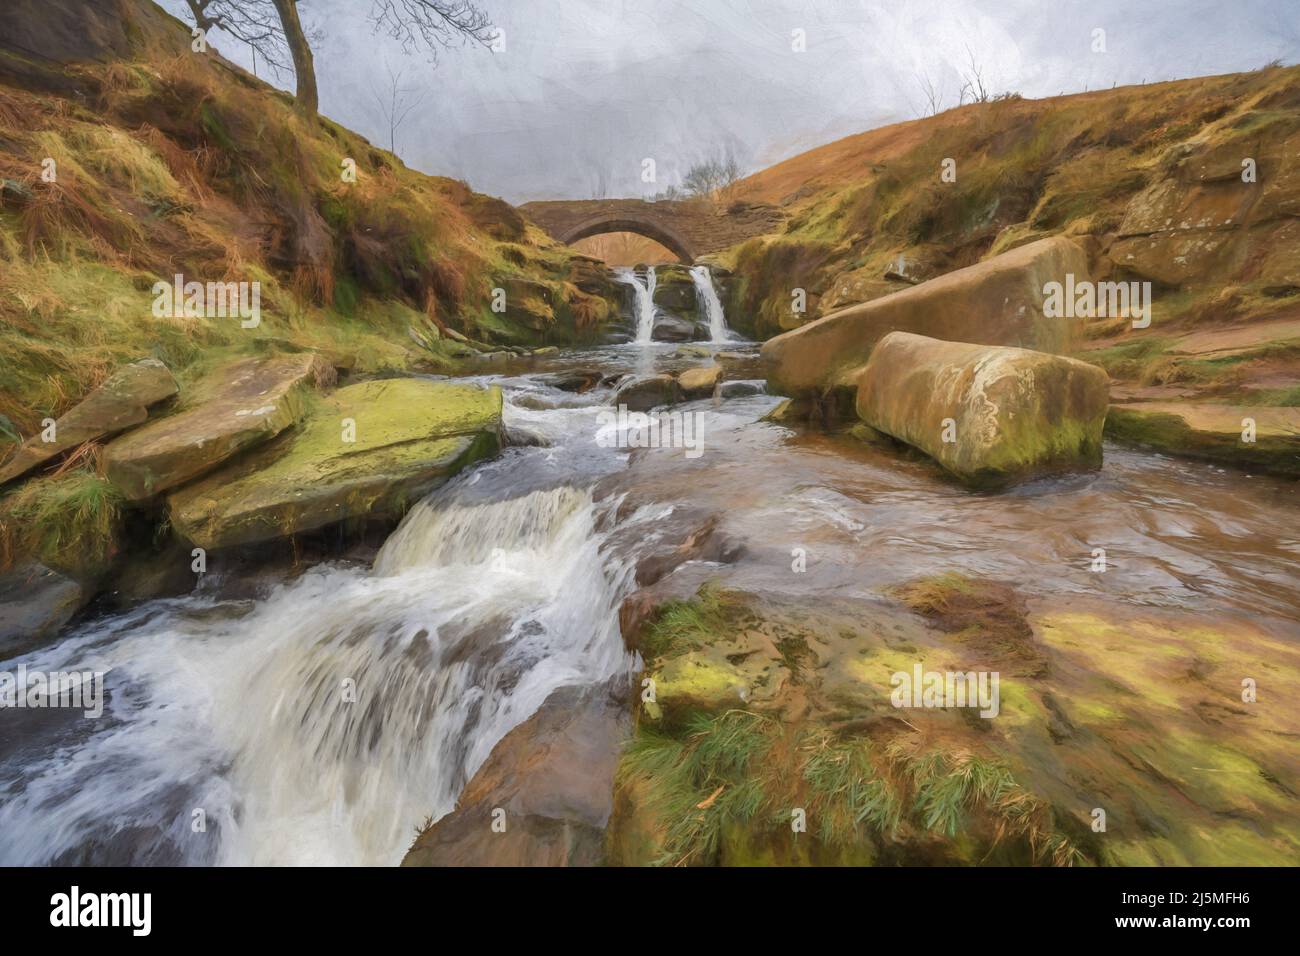 Poster des beaux-arts. Peinture numérique abstraite à l'huile de trois têtes Shire. Un pont en pierre dans le parc national de Peak District. Banque D'Images